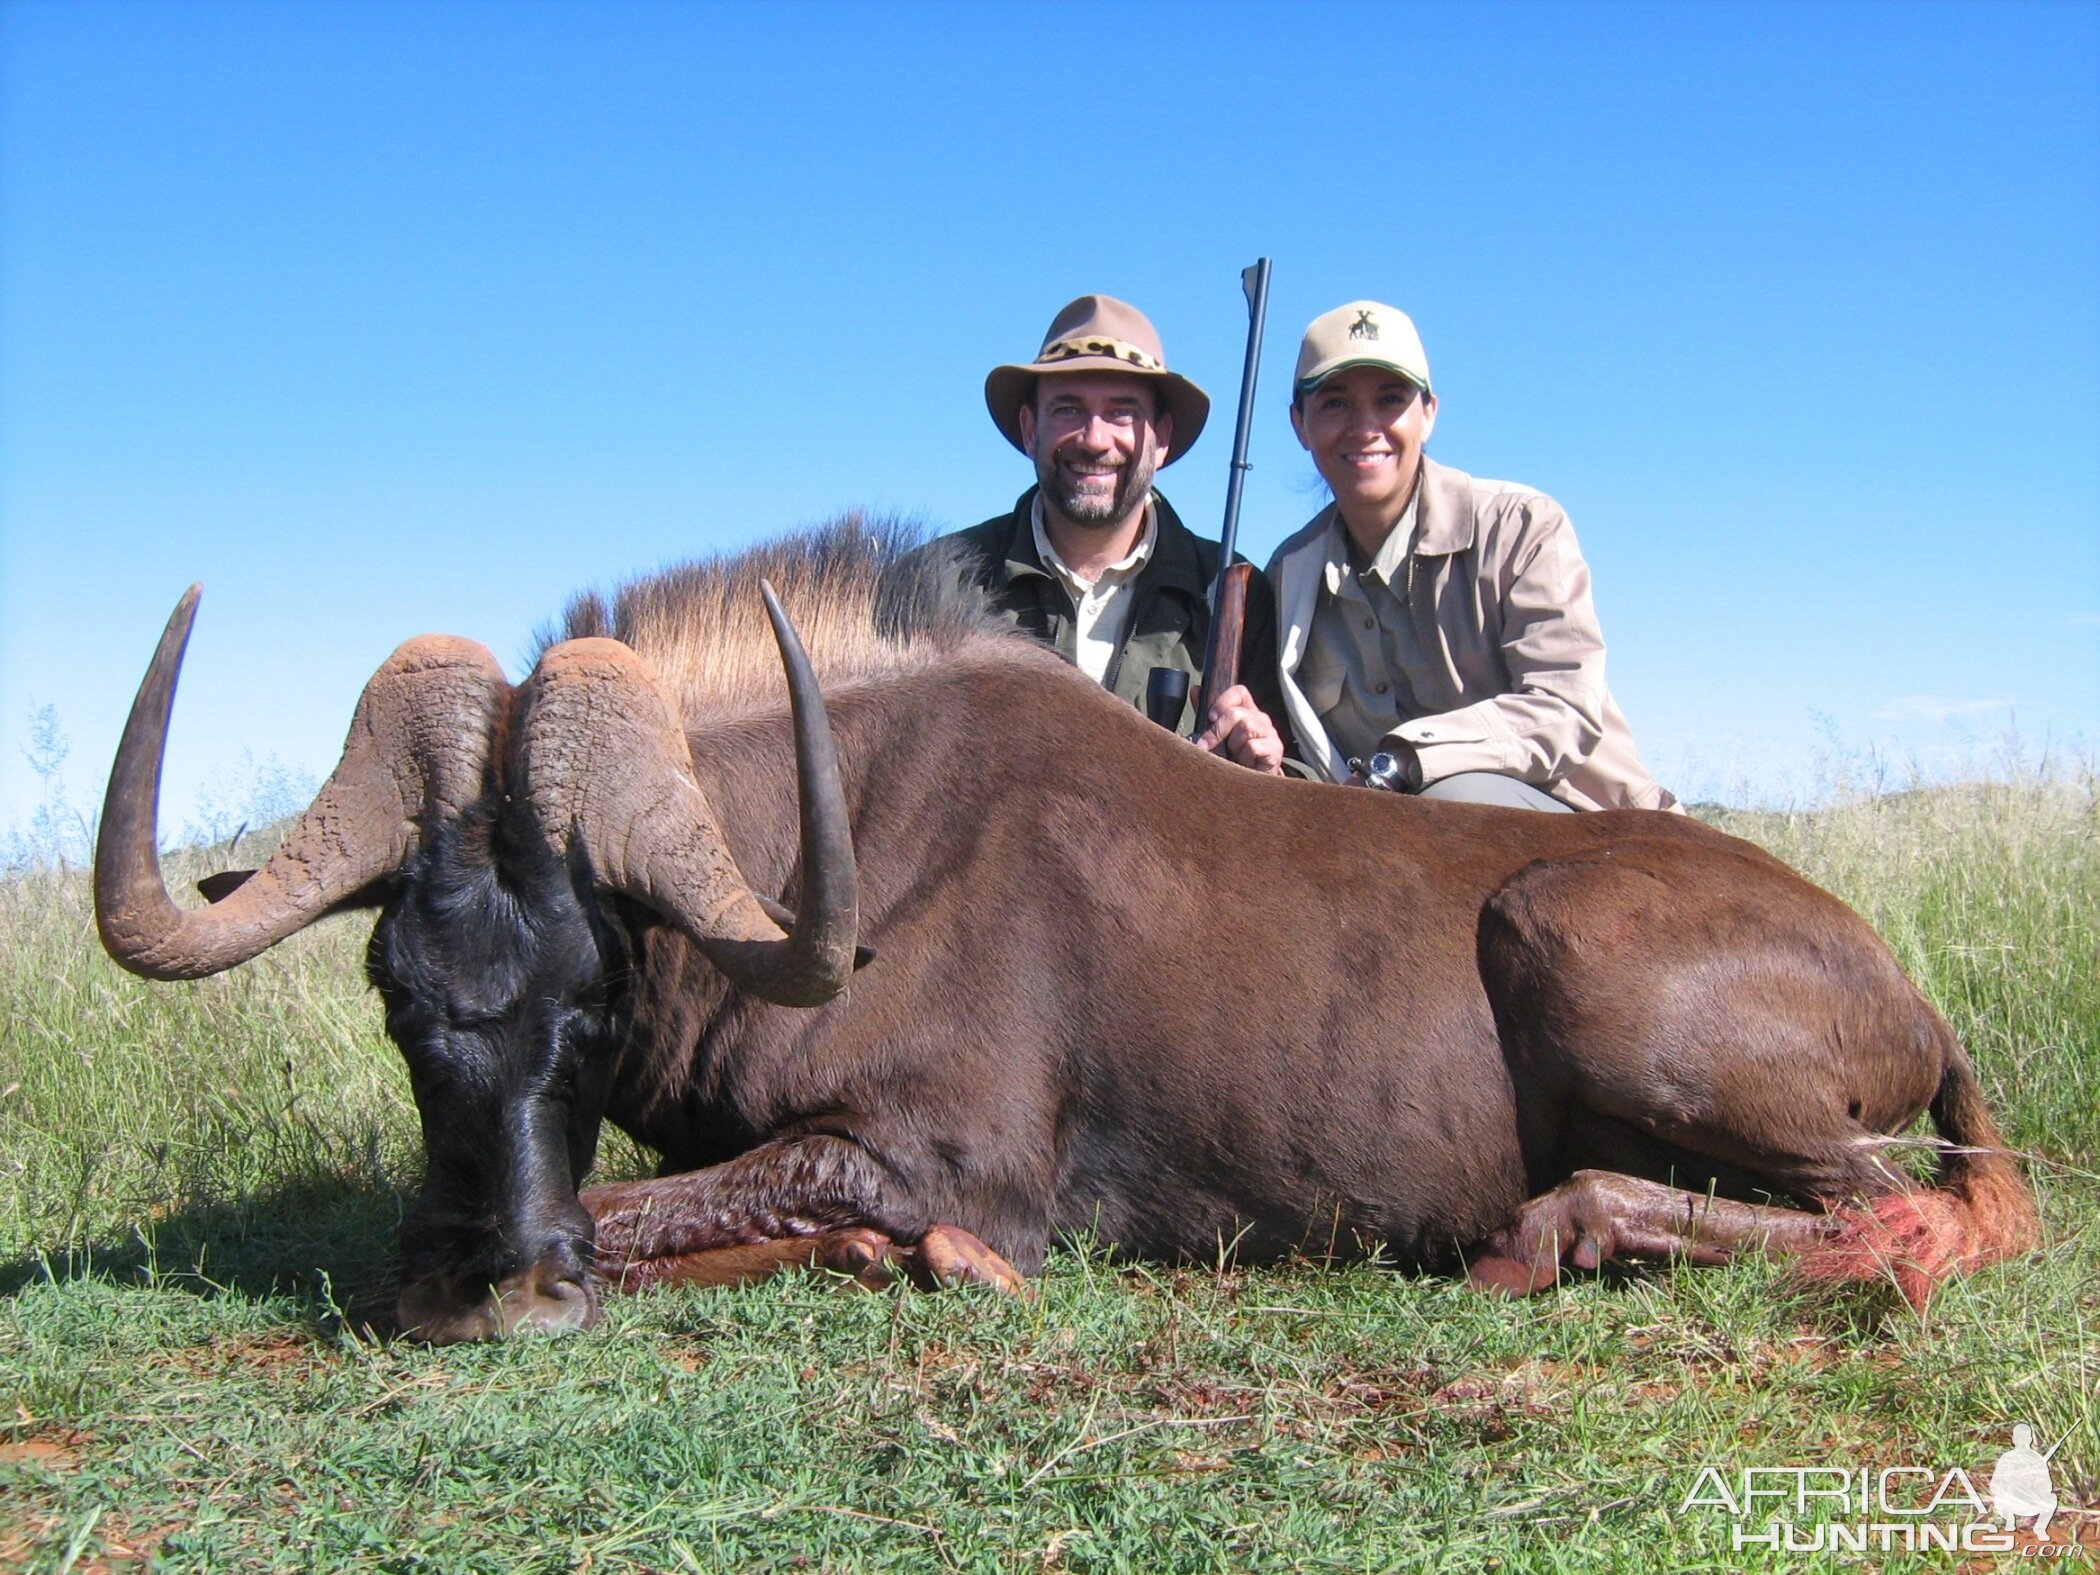 Hunting Black Wildebeest with Wintershoek Johnny Vivier Safaris in SA